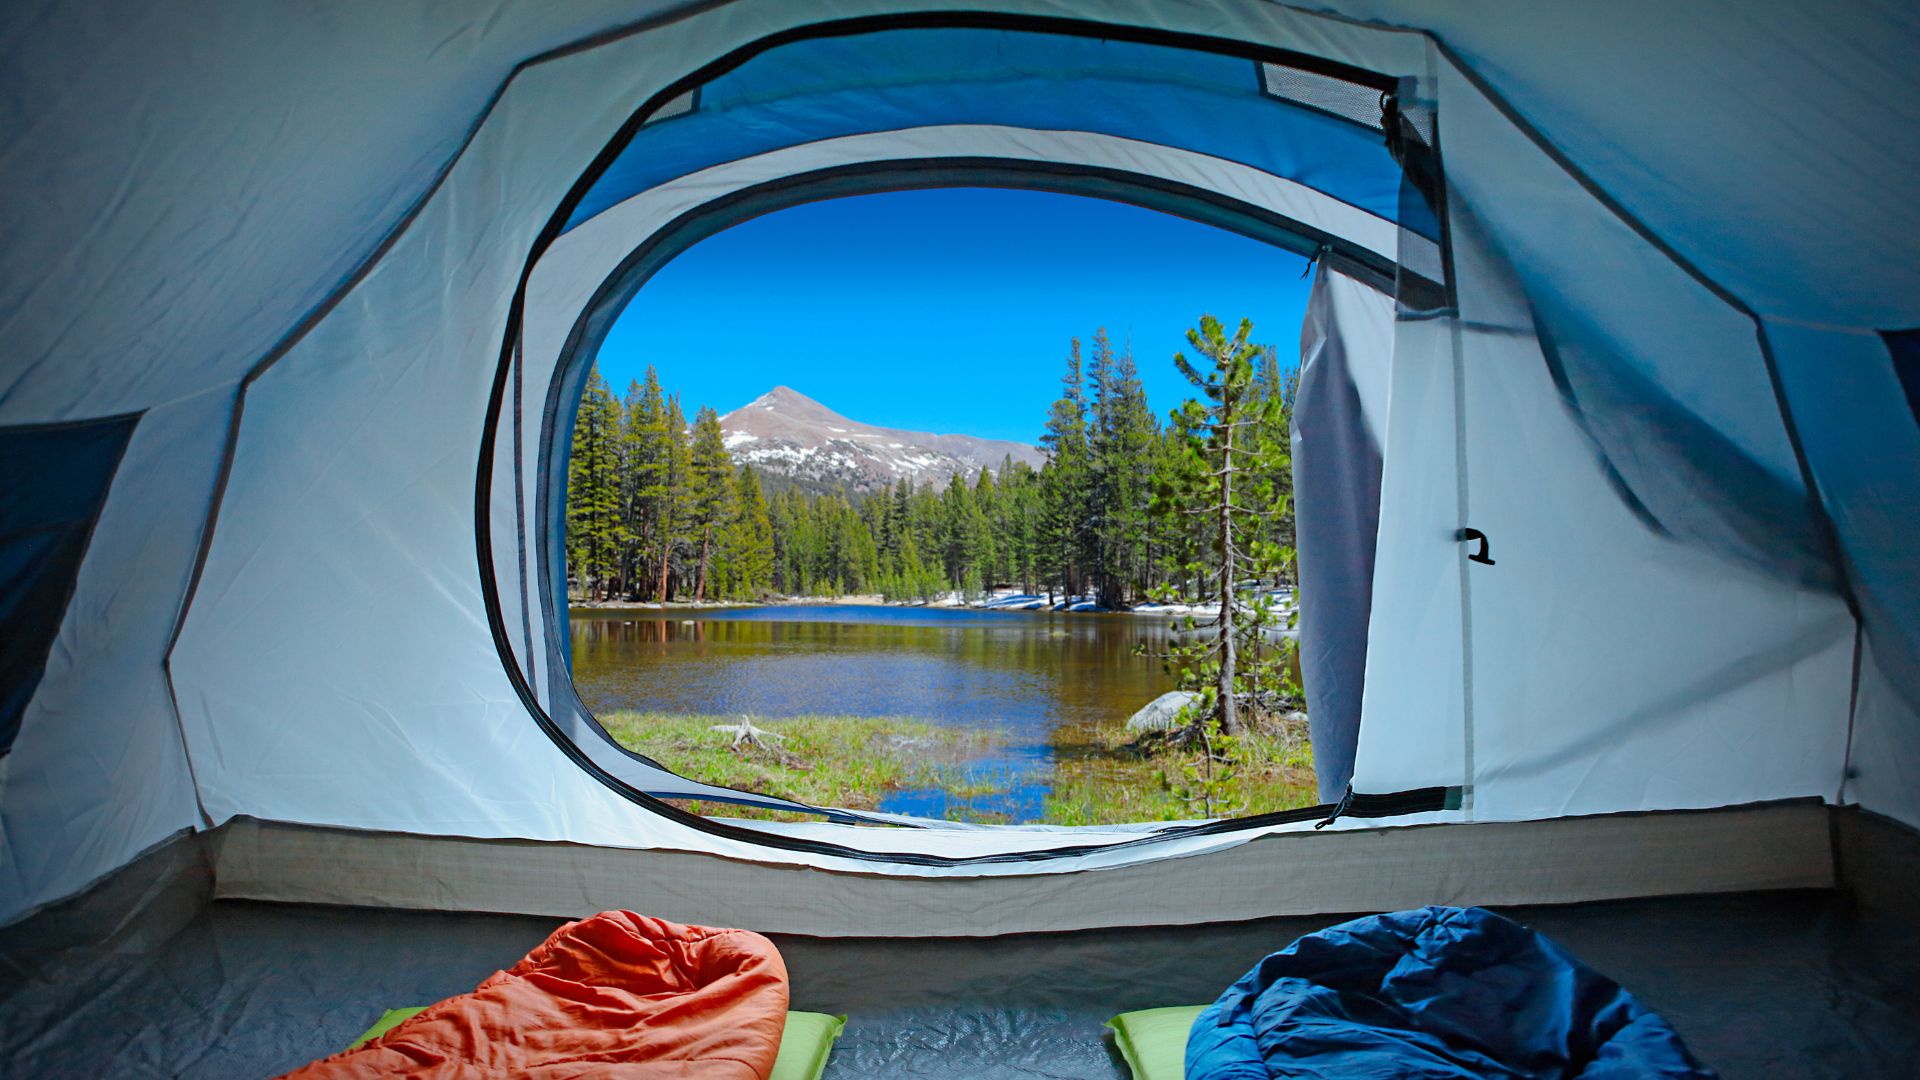 Yosemite tent camping